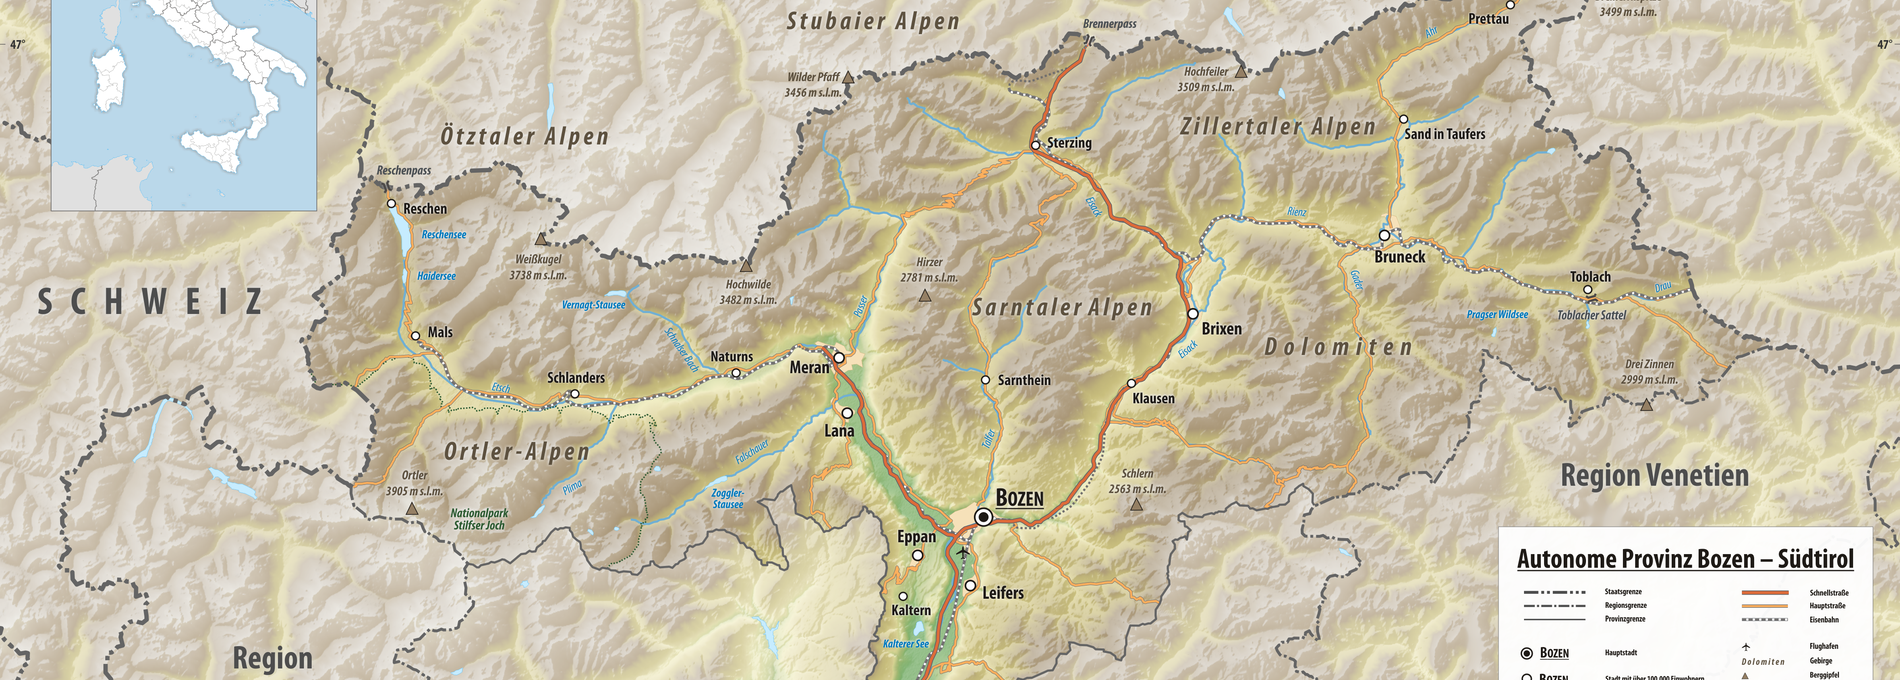 Das ist Südtirol - Reliefkarte